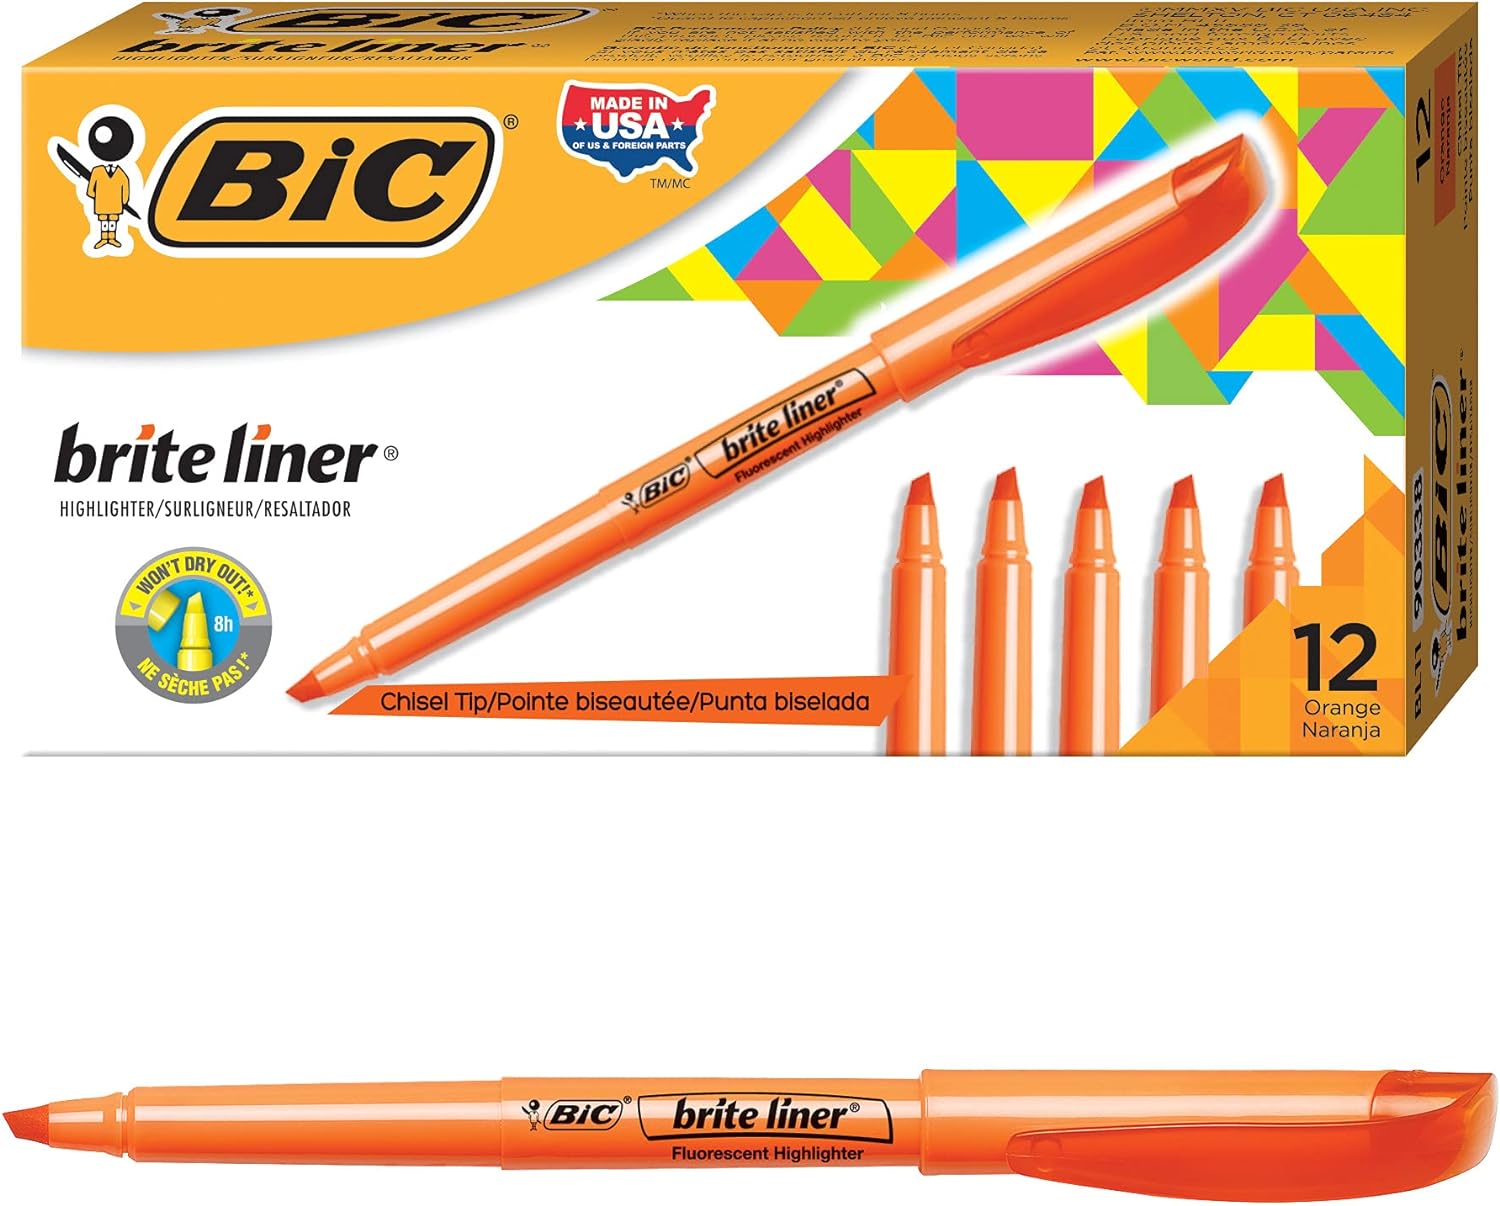 BIC Brite Liner Highlighter, Chisel Tip Orange 12 Count (Pack of 1)